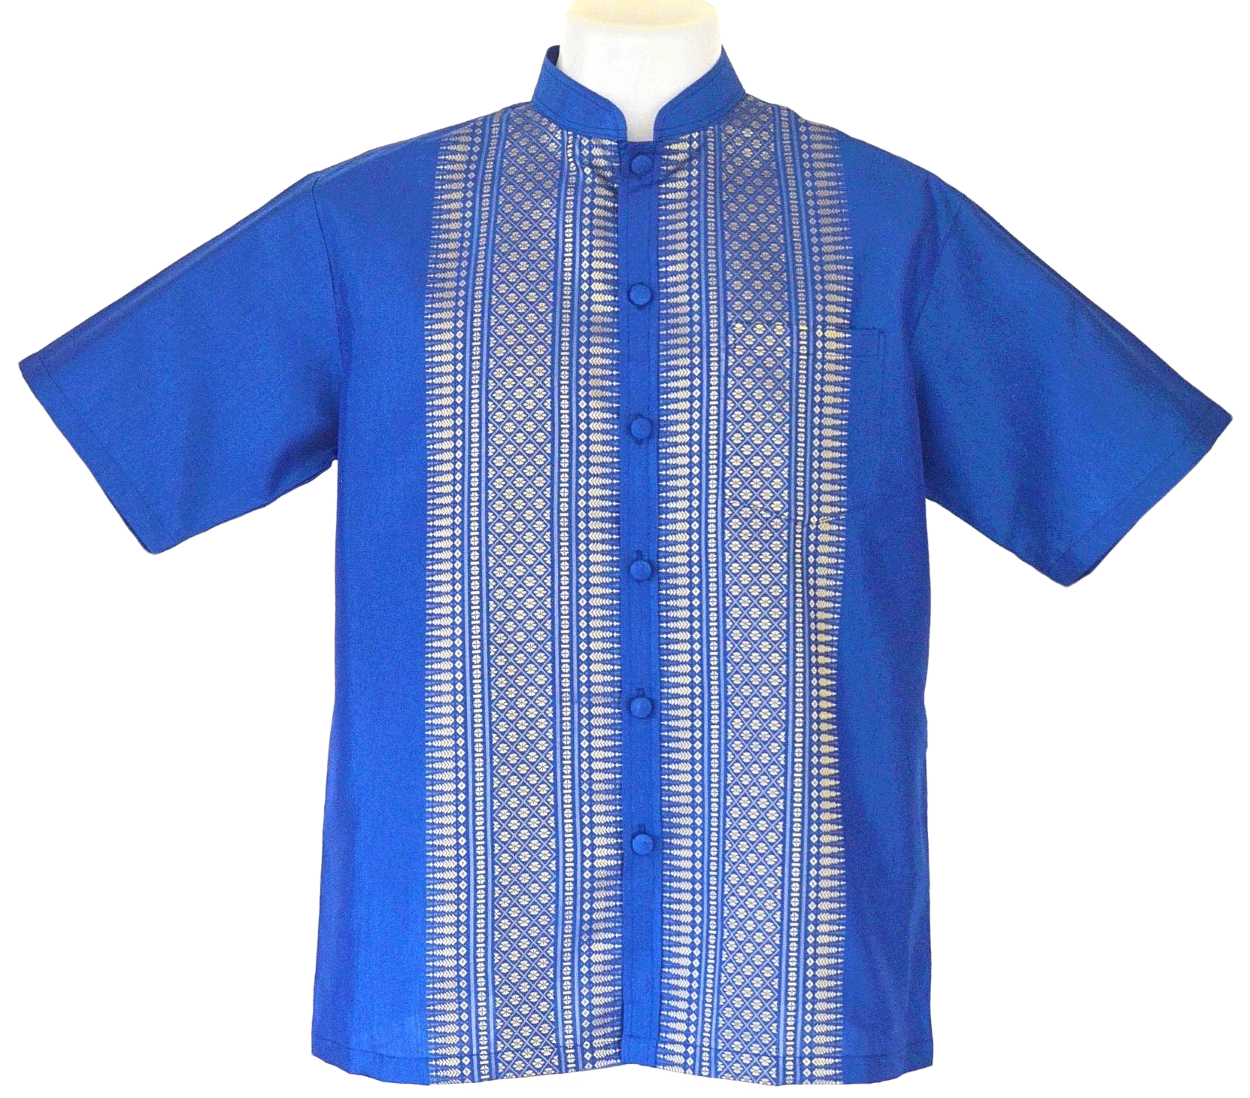 เสื้อไทย เสื้อผู้ชาย ชุดไทยชาย แขนสั้น คอจีน ไซส์ S อก 42 นิ้ว (Size S) Thai Shirt/Thai Costume for Men/Short Sleeve/Mandarin Collar/Chest 42"